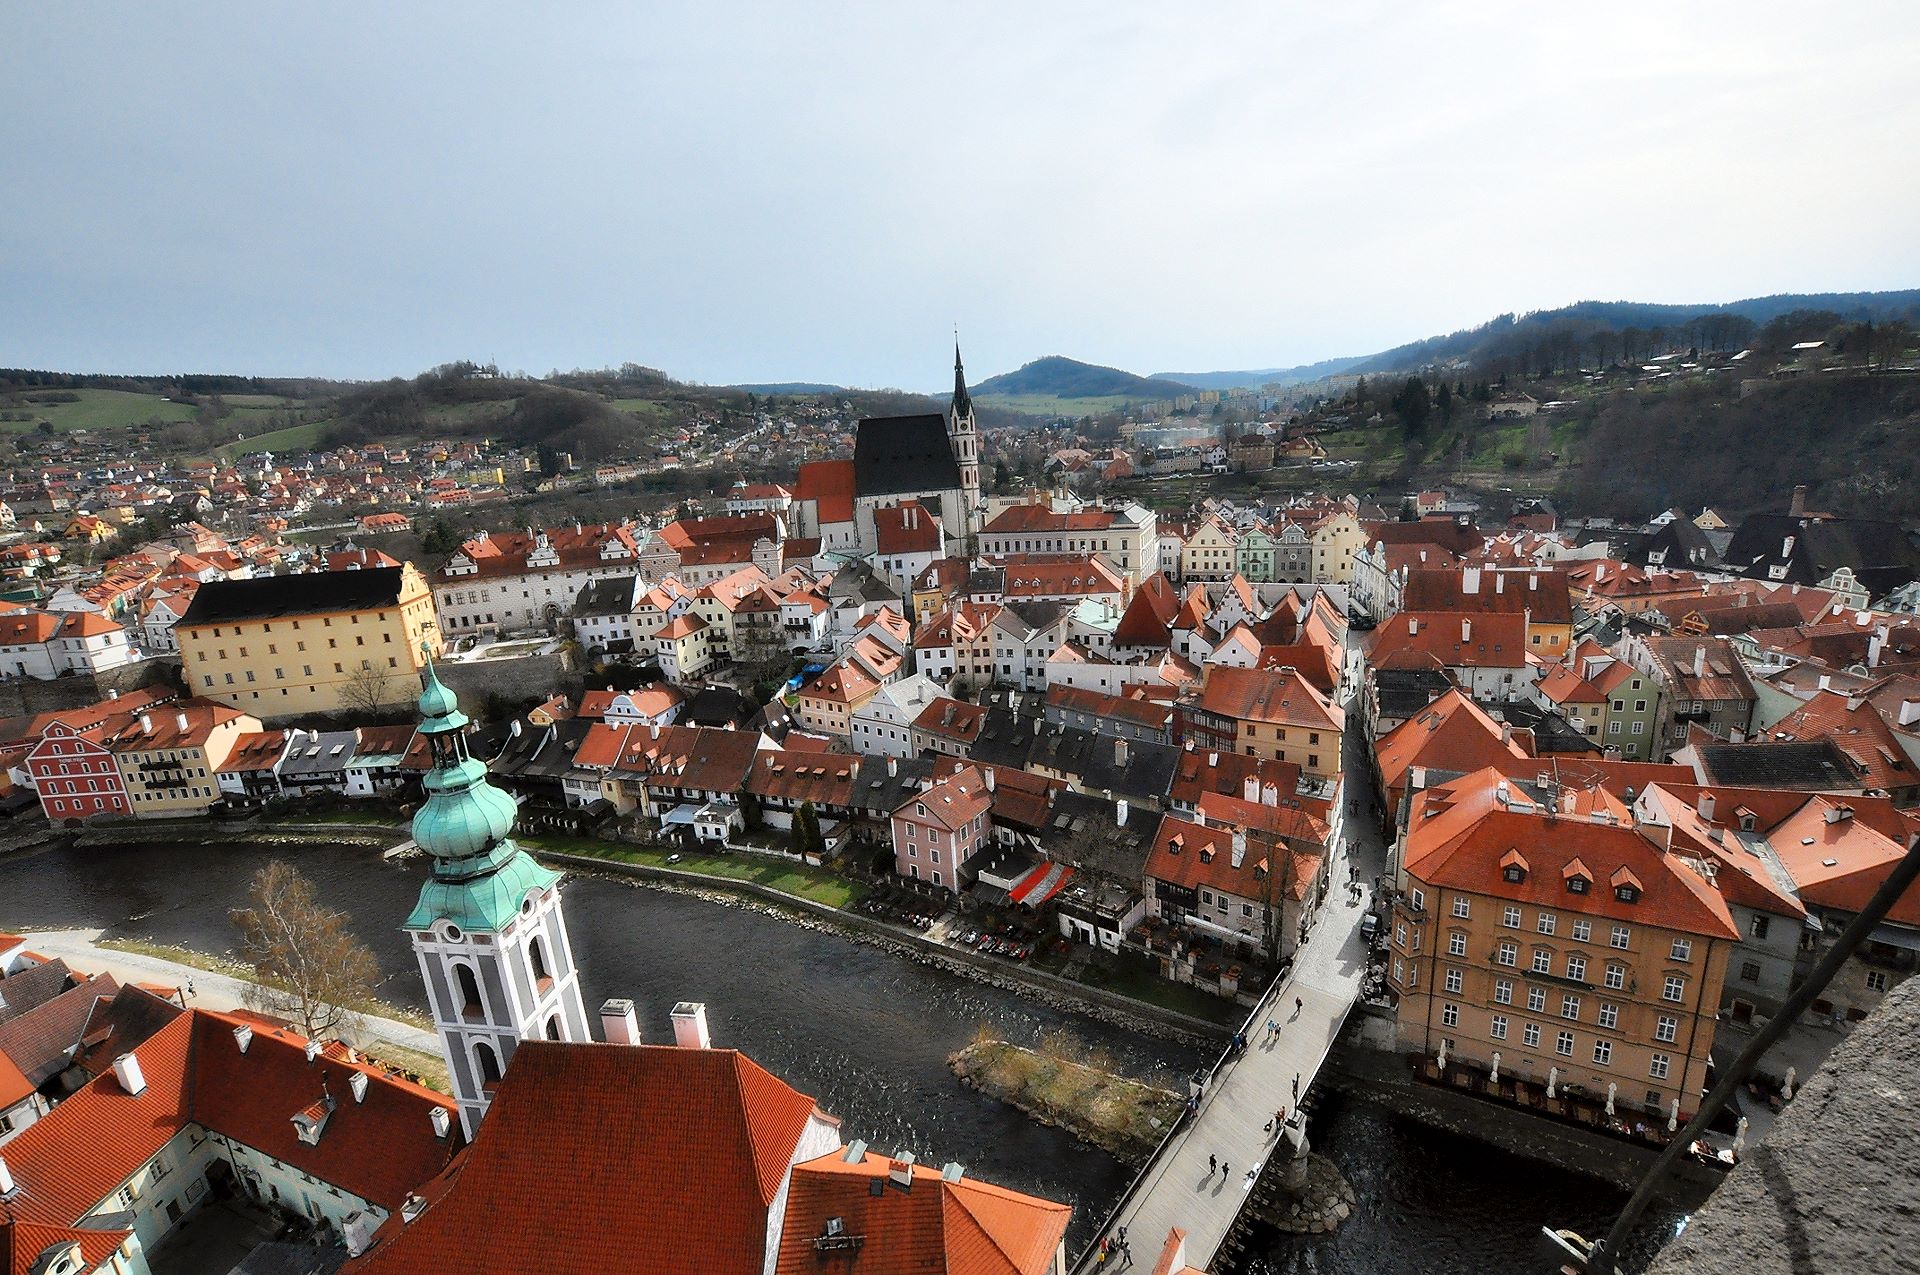 Wahrhaft zu Füssen liegt einem die Altstadt von Krumau, wenn man vom großen Turm runterblickt